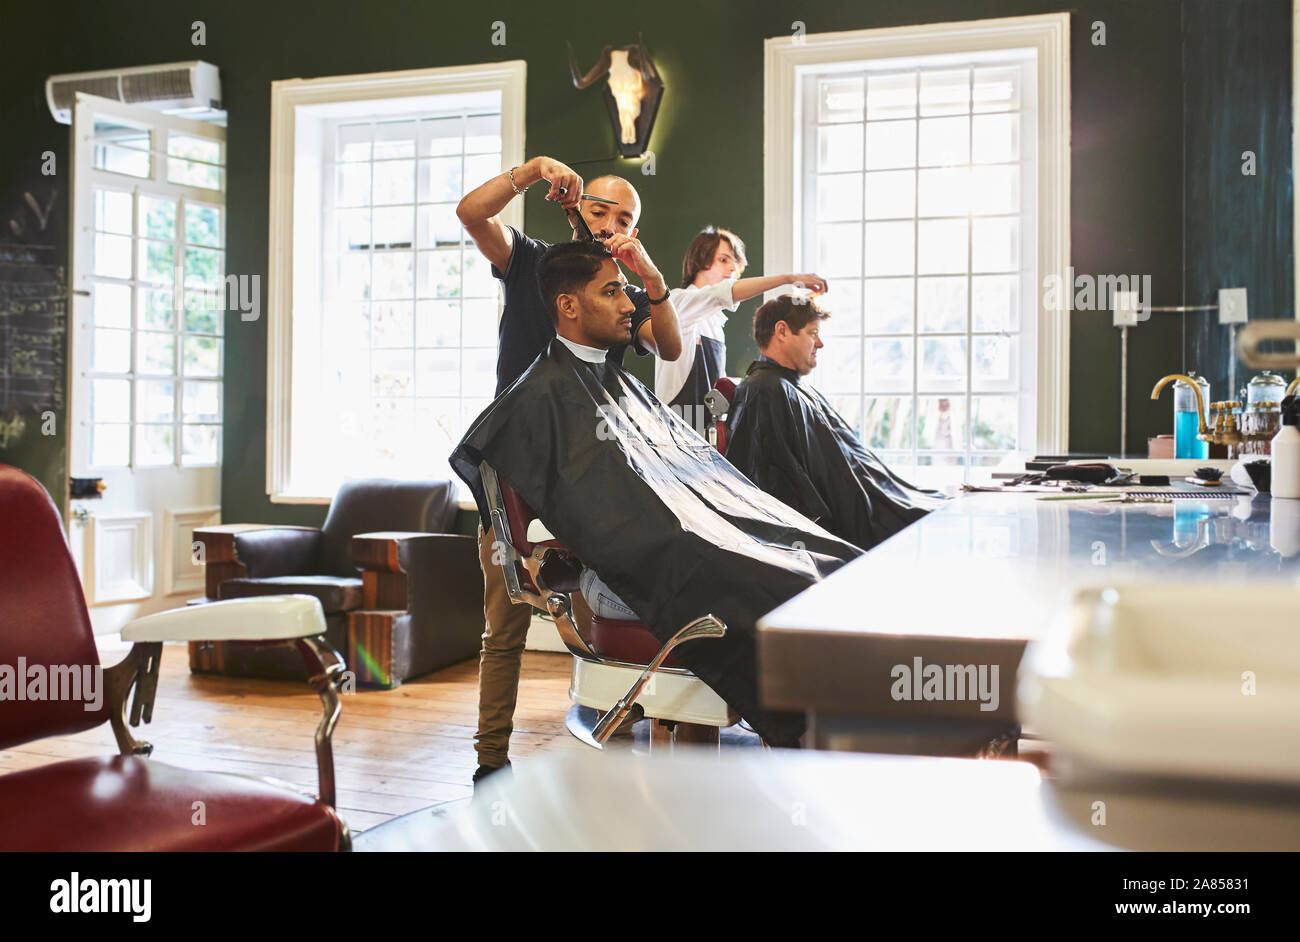 Coiffure masculine la coupe de cheveux du client dans un salon de barbier Banque D'Images